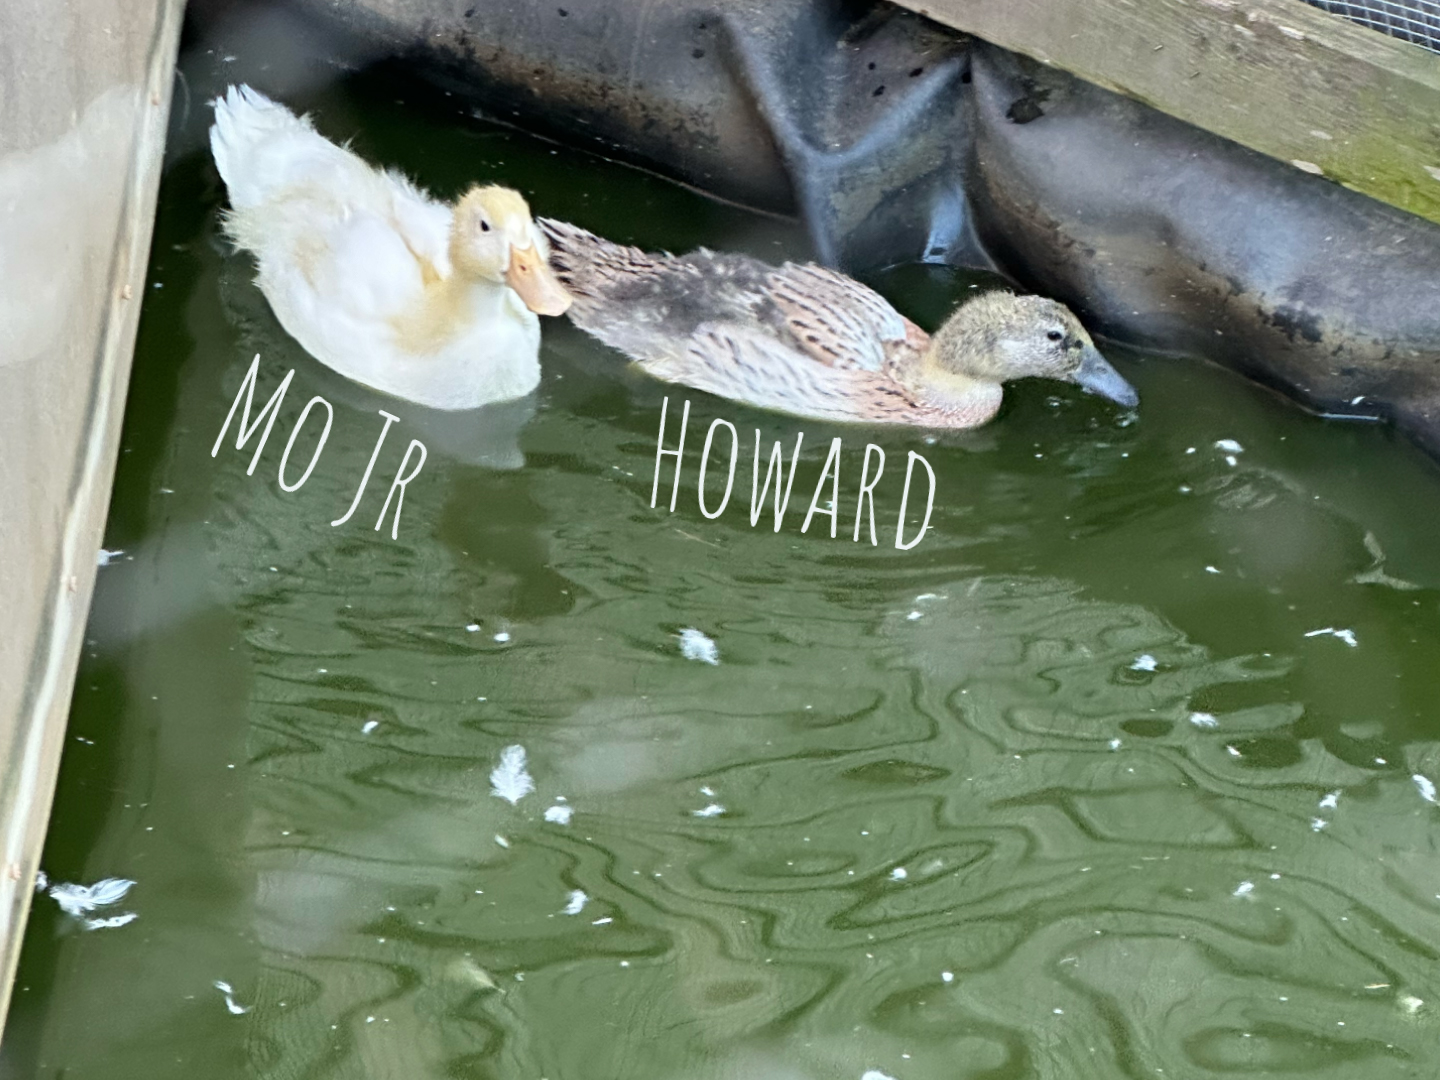 Mo Jr and Howard ducks